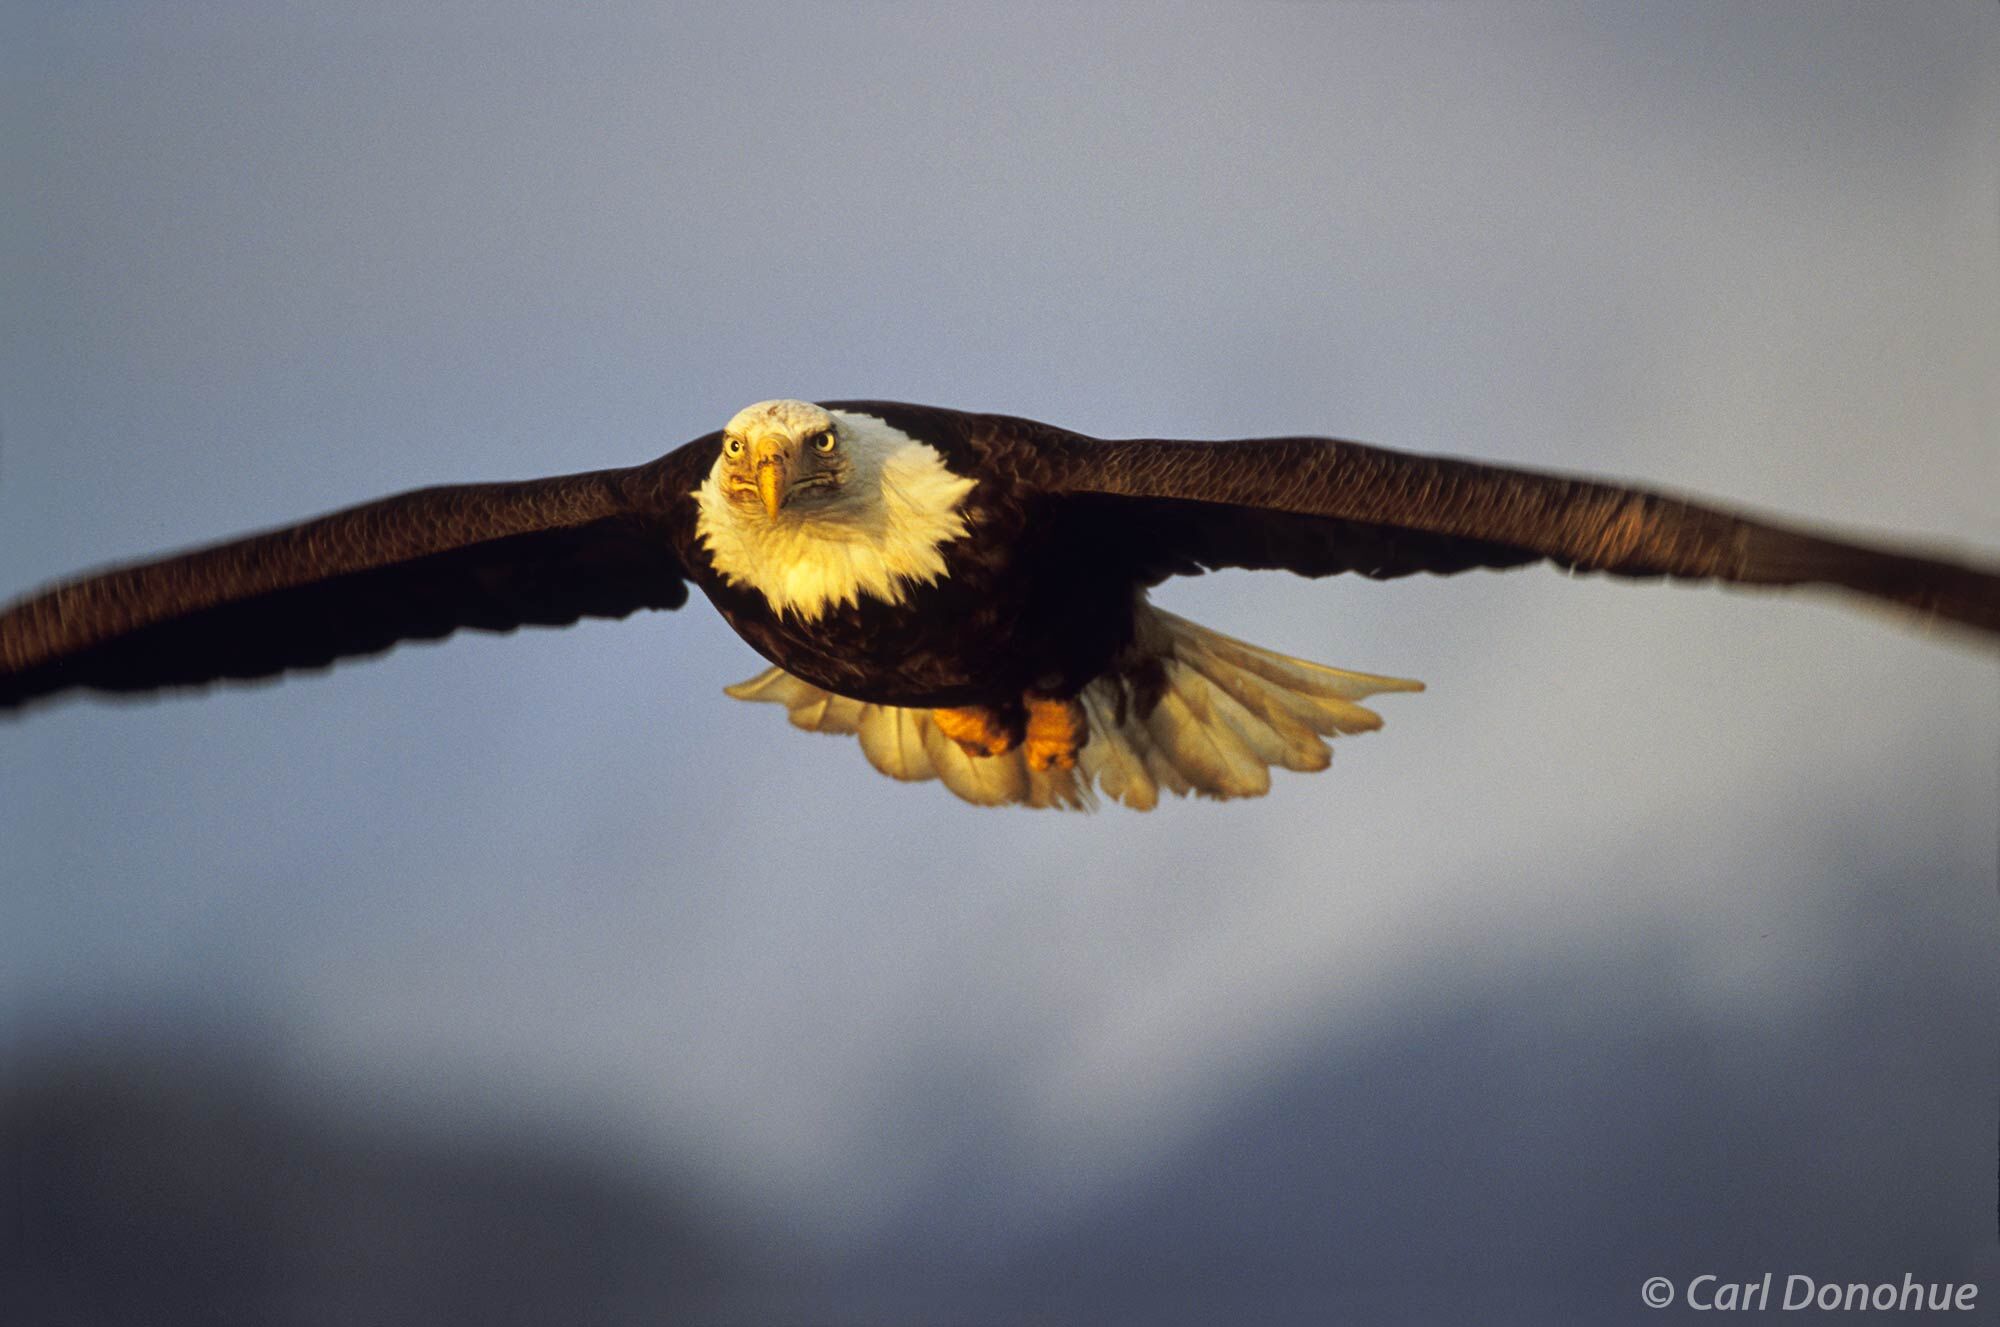 Adult Bald Eagle in flight, coming head on, Homer, Alaska. Haliaeetus leucocephalus.